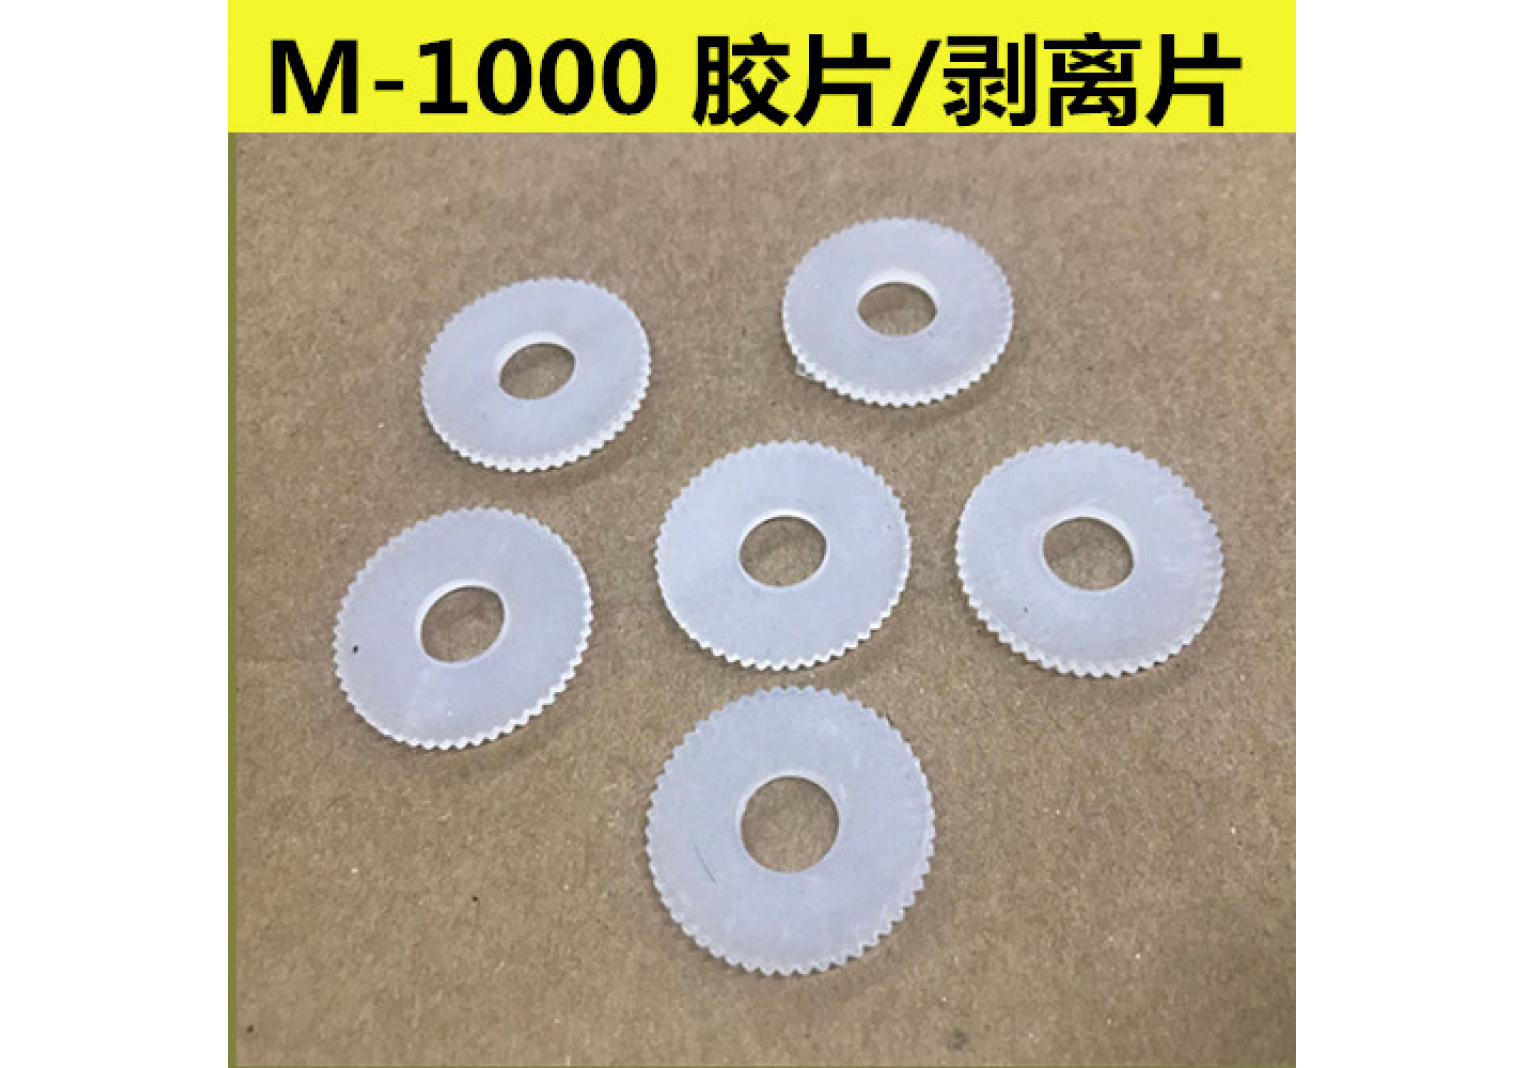 M-1000 tape dispenser accessories 138-1